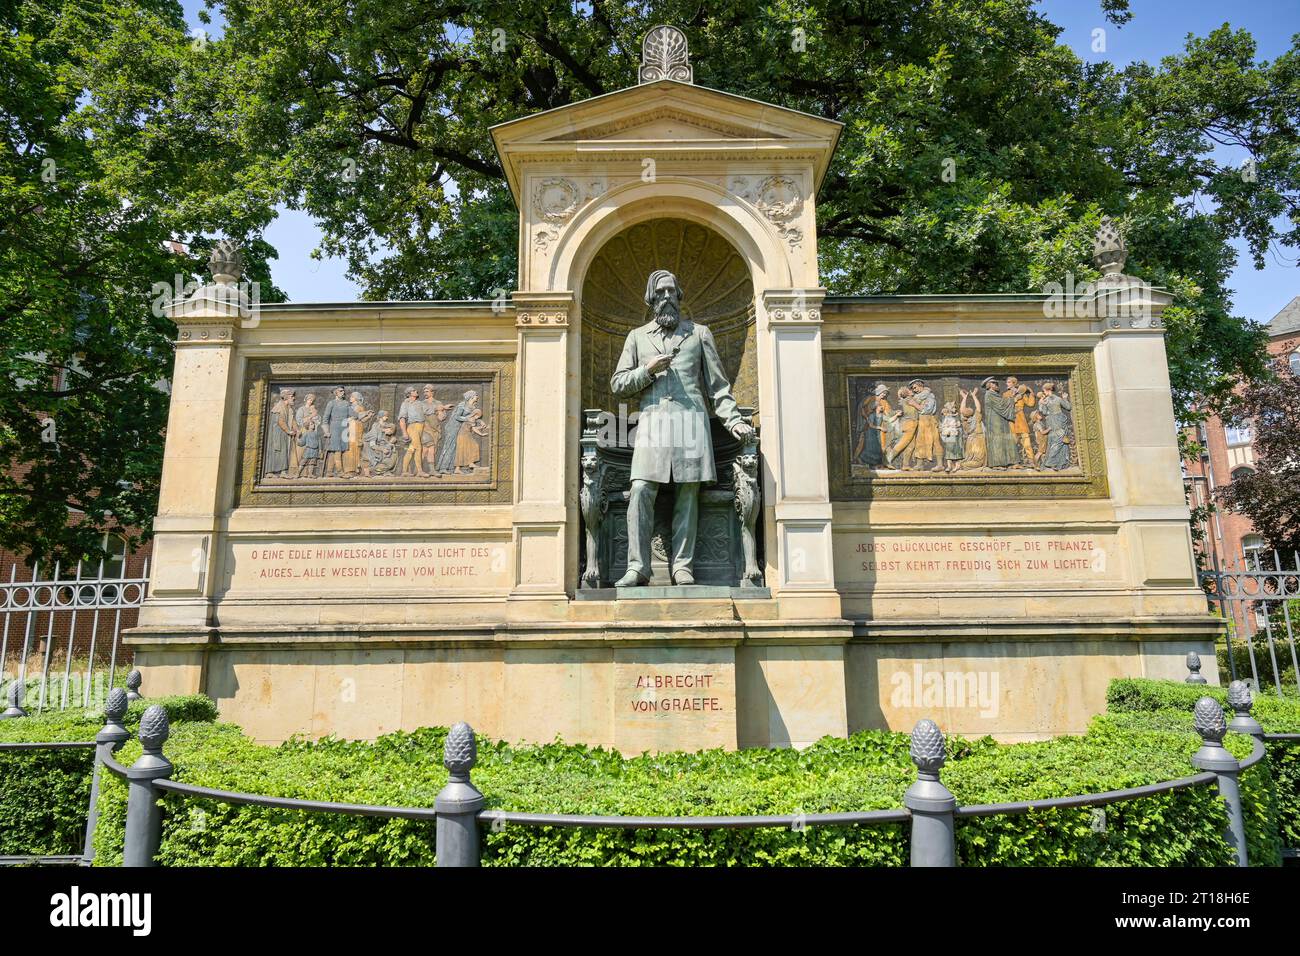 Denkmal, Albrecht von Graefe, Luisenstraße, Mitte, Berlin, Deutschland *** Local Caption *** , Berlin, Deutschland Stock Photo